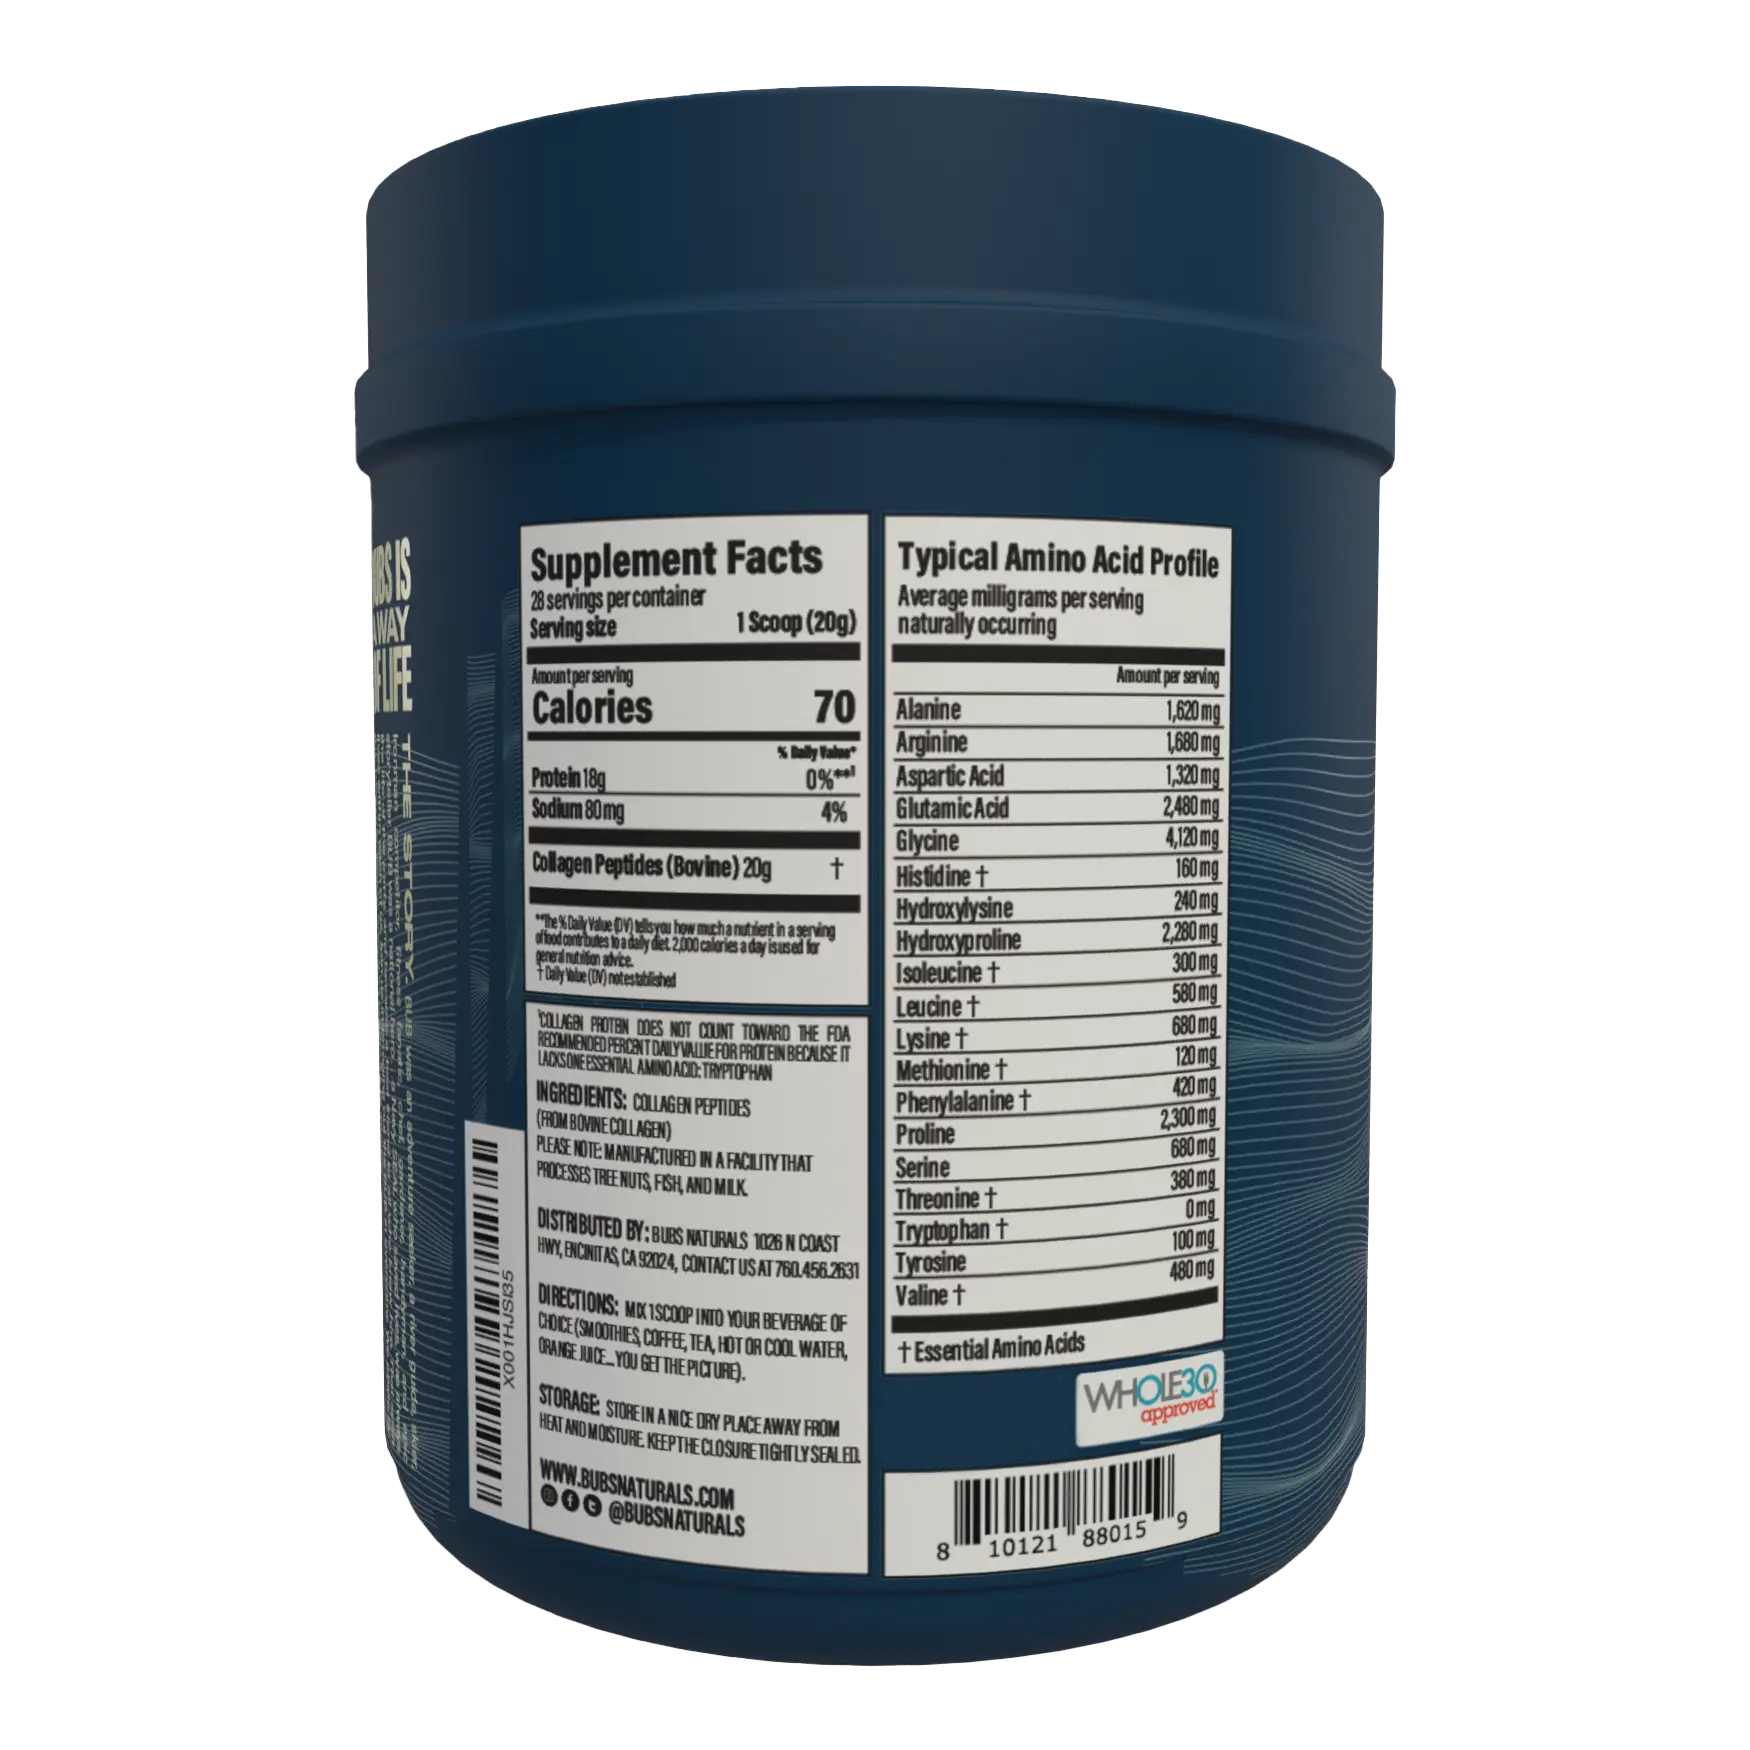 BUBS Naturals Unflavored Collagen Peptides 20 oz tub, Back Label